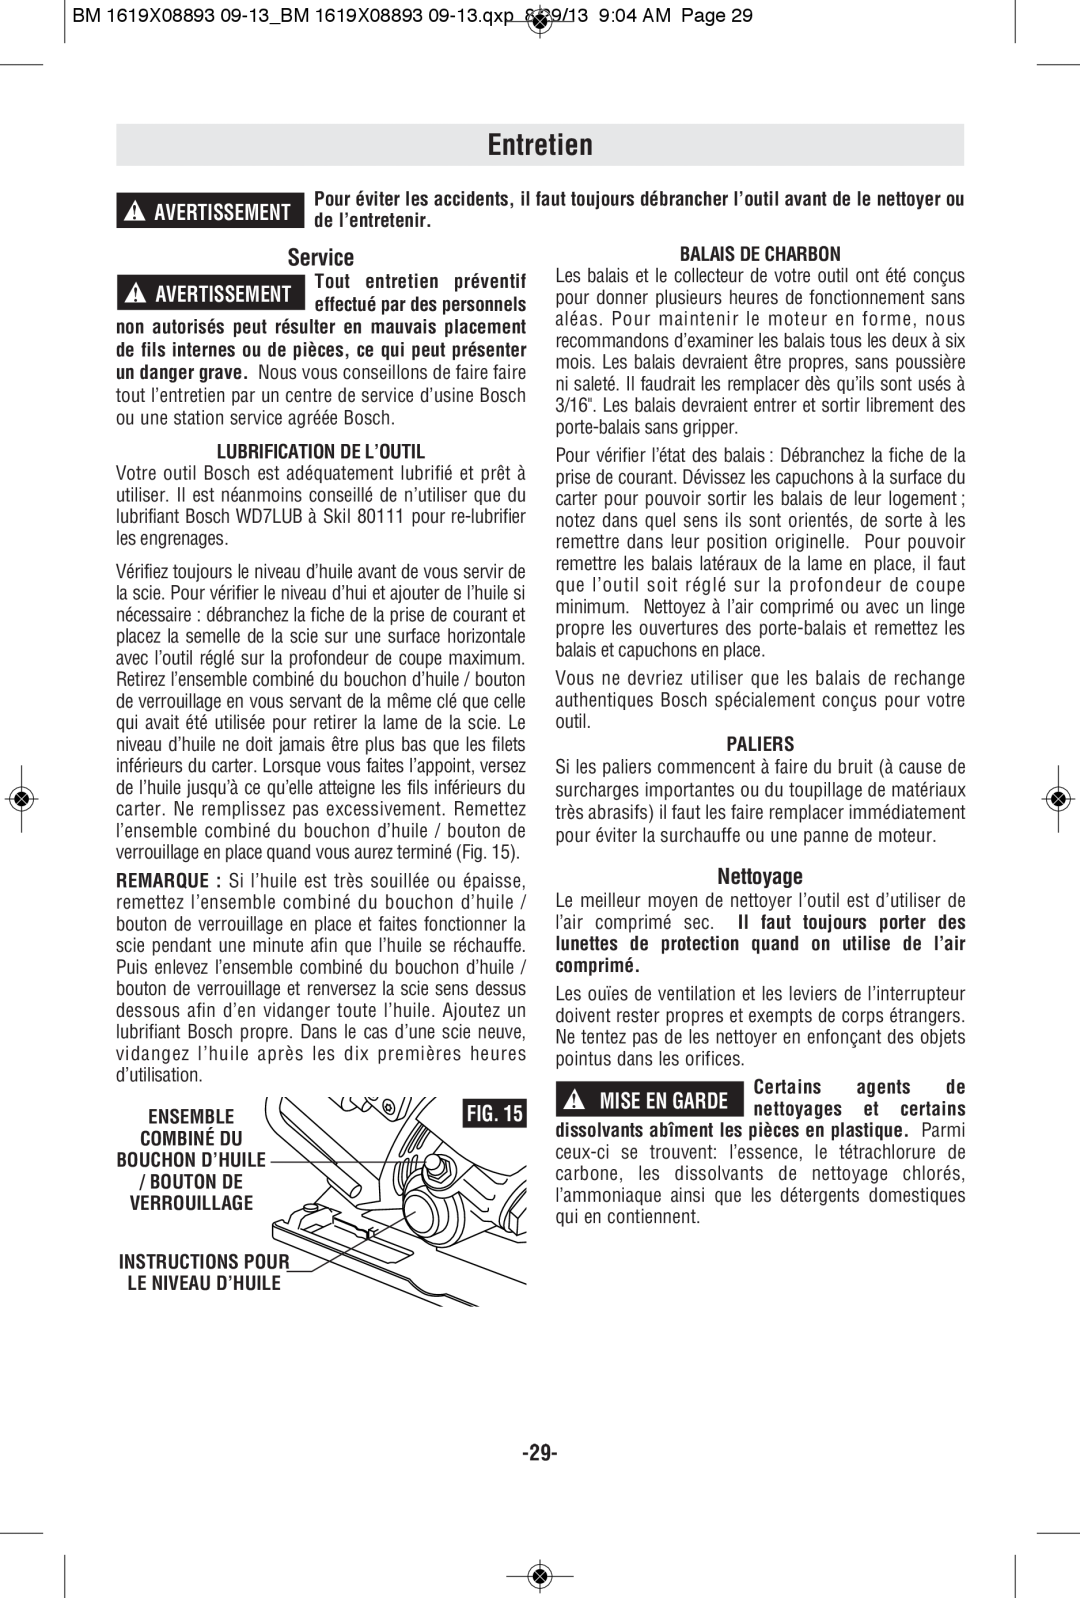 Bosch Power Tools CSW41 manual Entretien, Nettoyage, de l’entretenir, Lubrification De L’Outil, Balais De Charbon, Paliers 